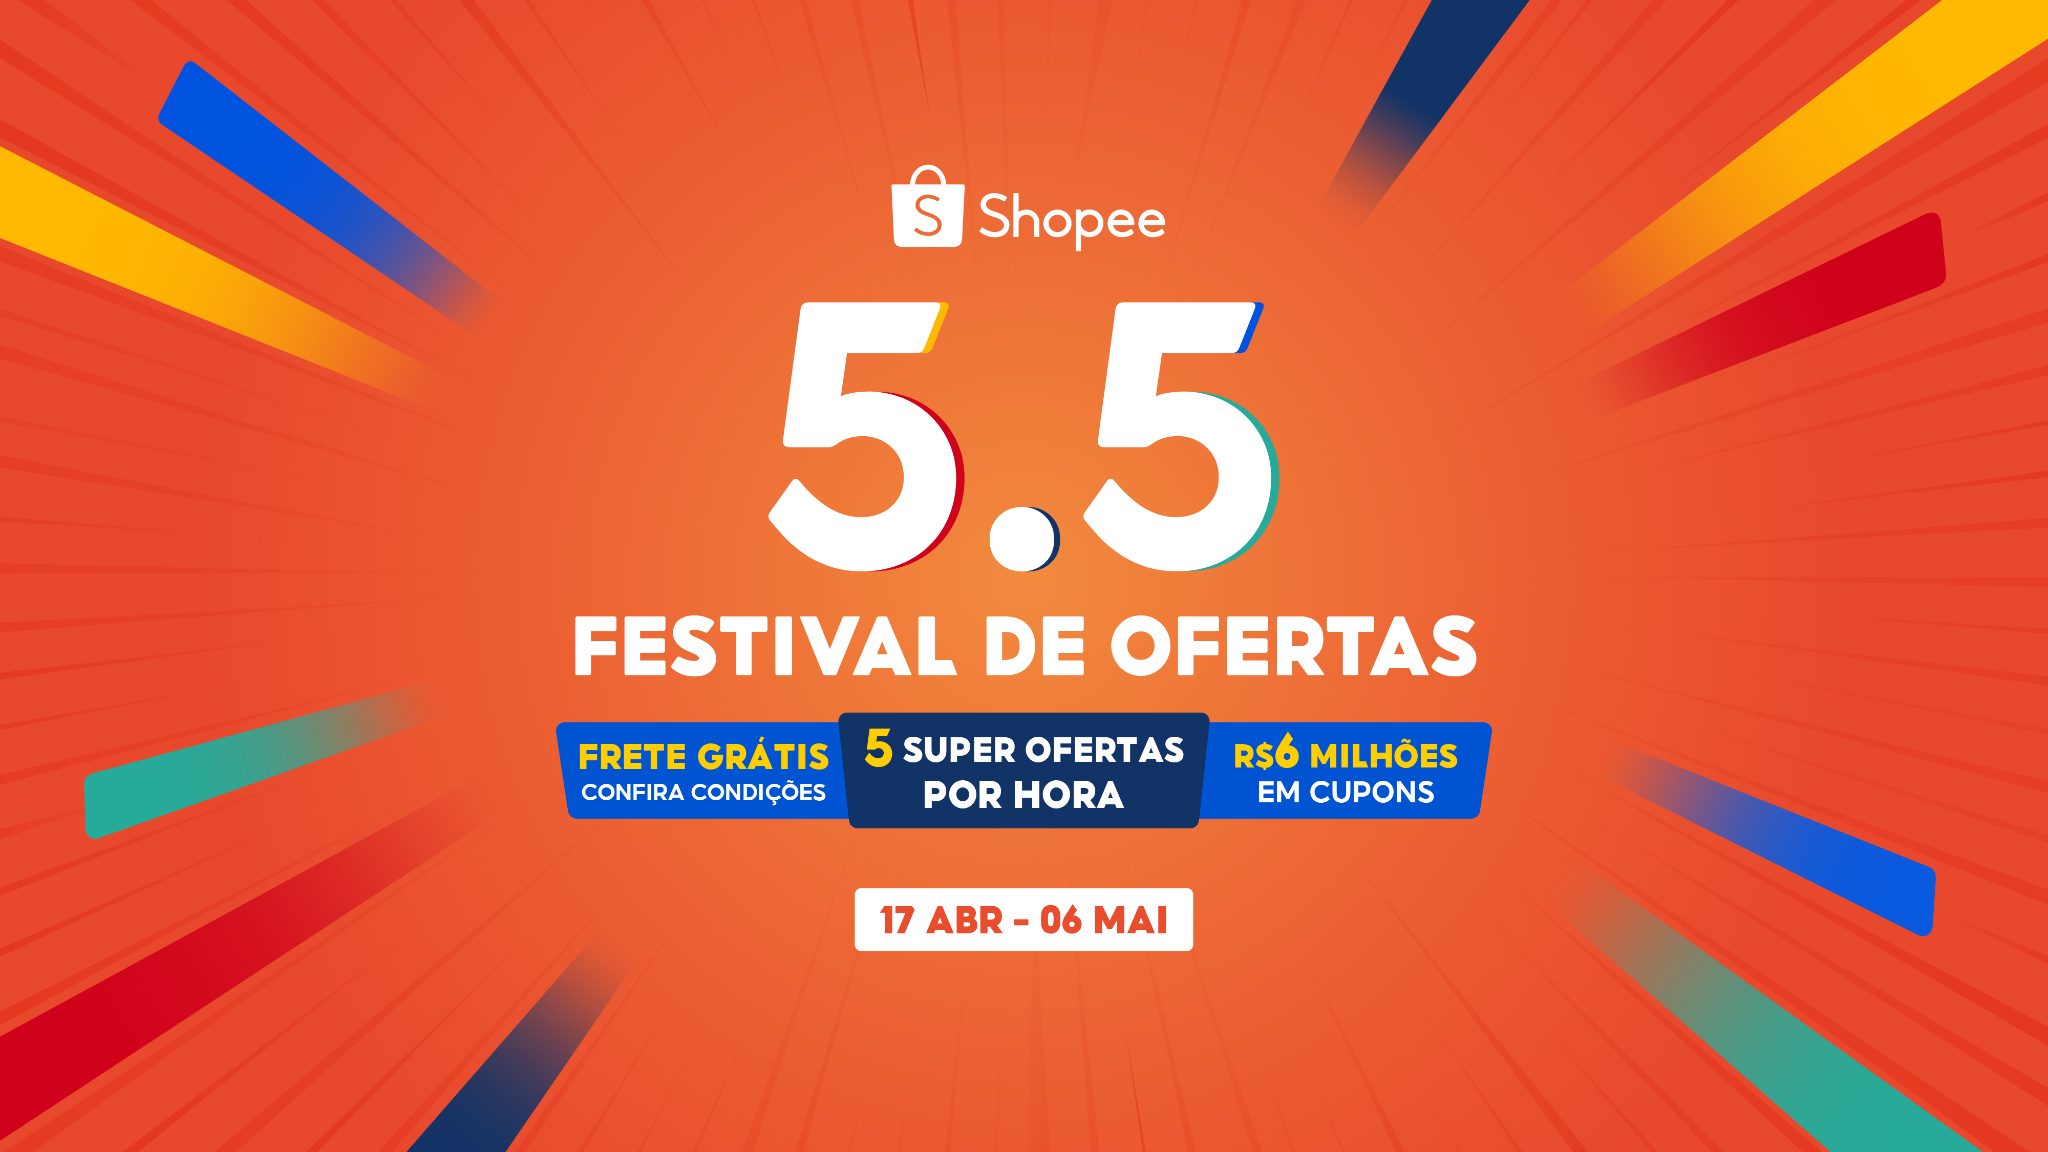 Shopee Brasil Ofertas incríveis. Melhores preços do mercado, amigos share  club convite 